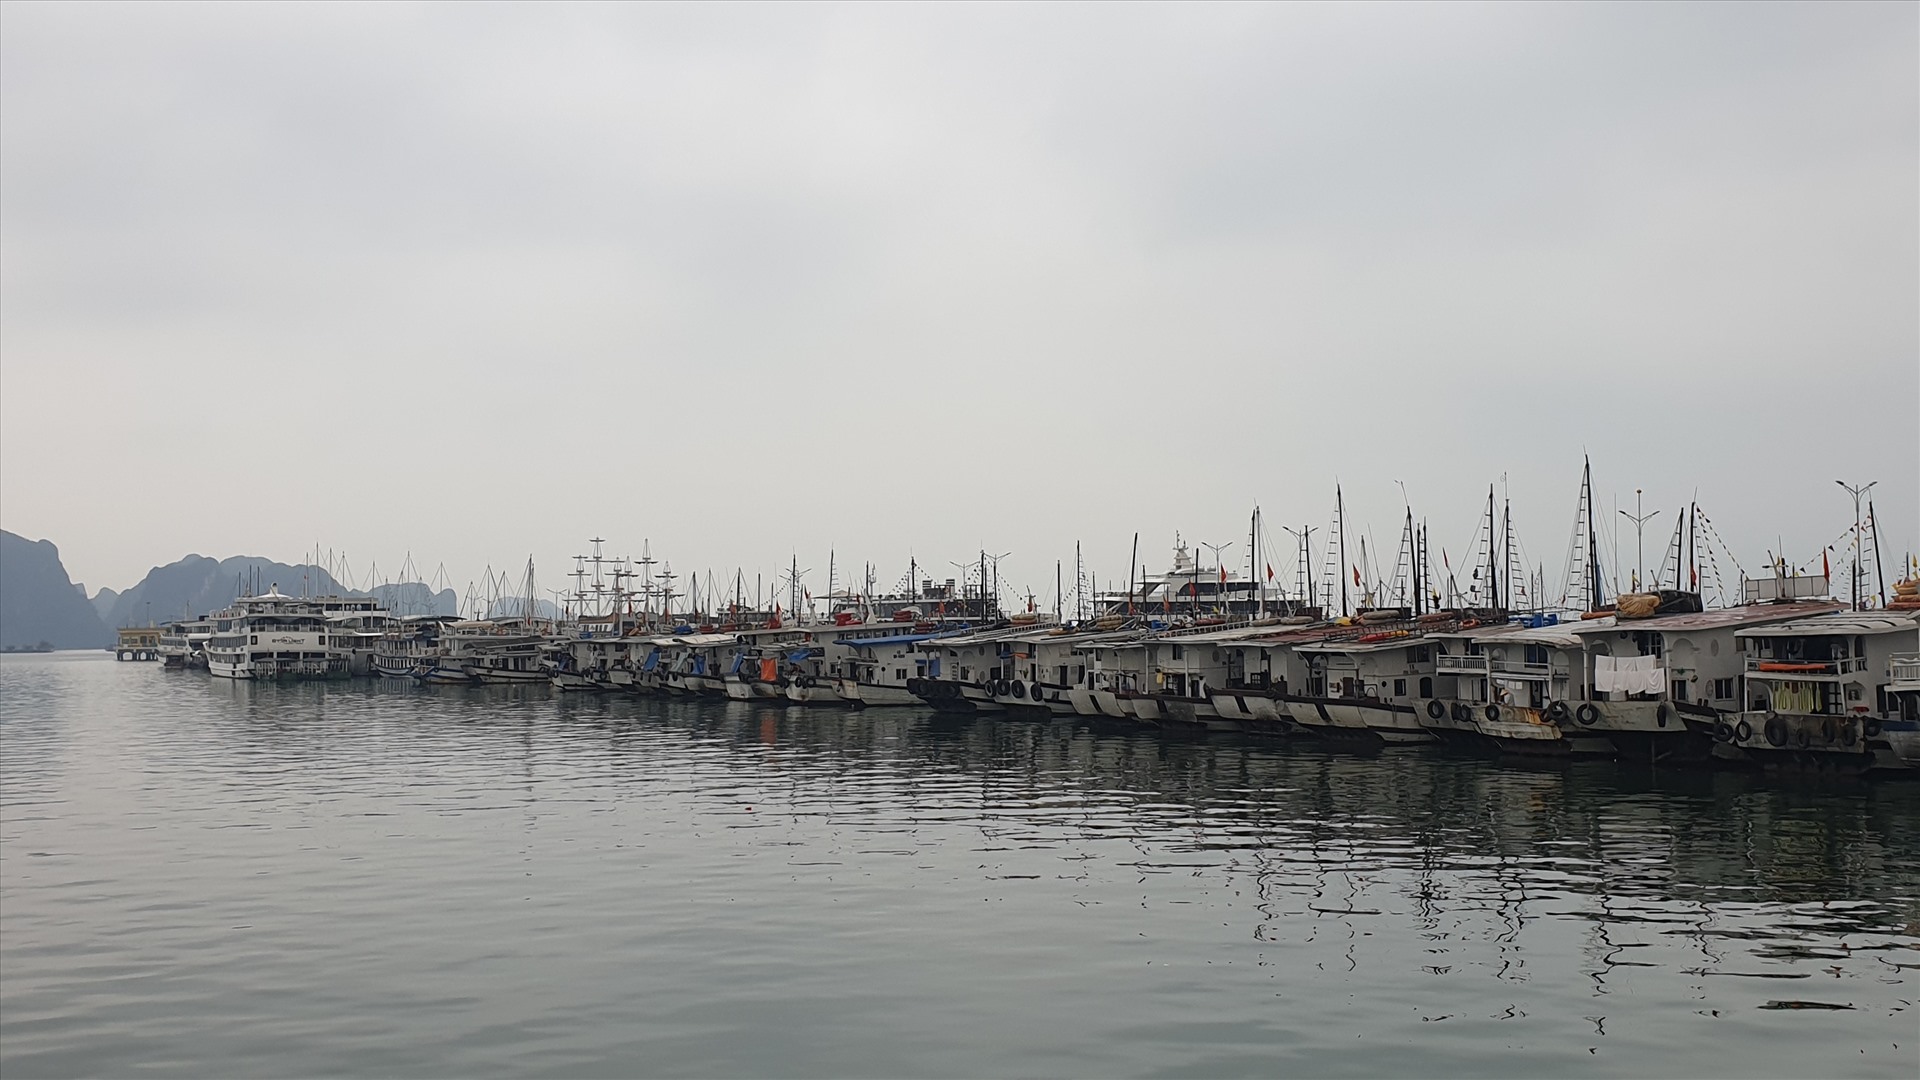 Tàu du lịch trên vịnh Hạ Long sẽ tiếp tục “nằm bờ” ít nhất cho đến ngày 3.5.2020. Ảnh: Nguyễn Hùng